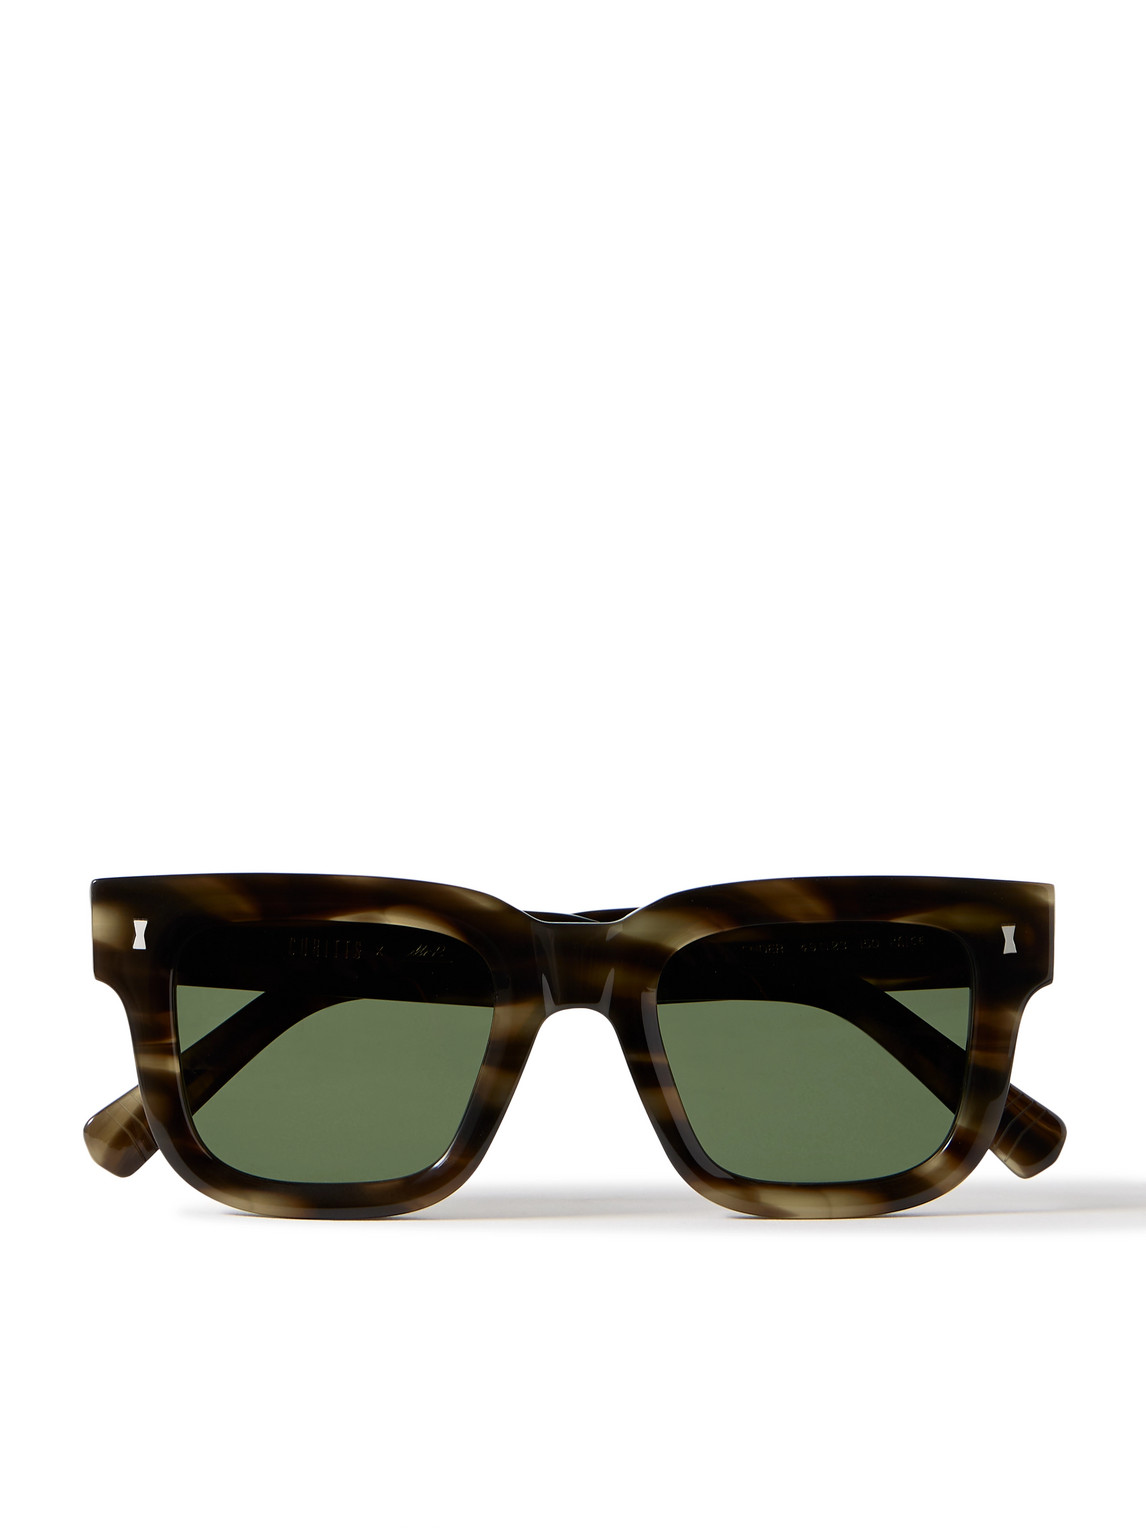 Cubitts Plender D-Frame Tortoiseshell Acetate Sunglasses